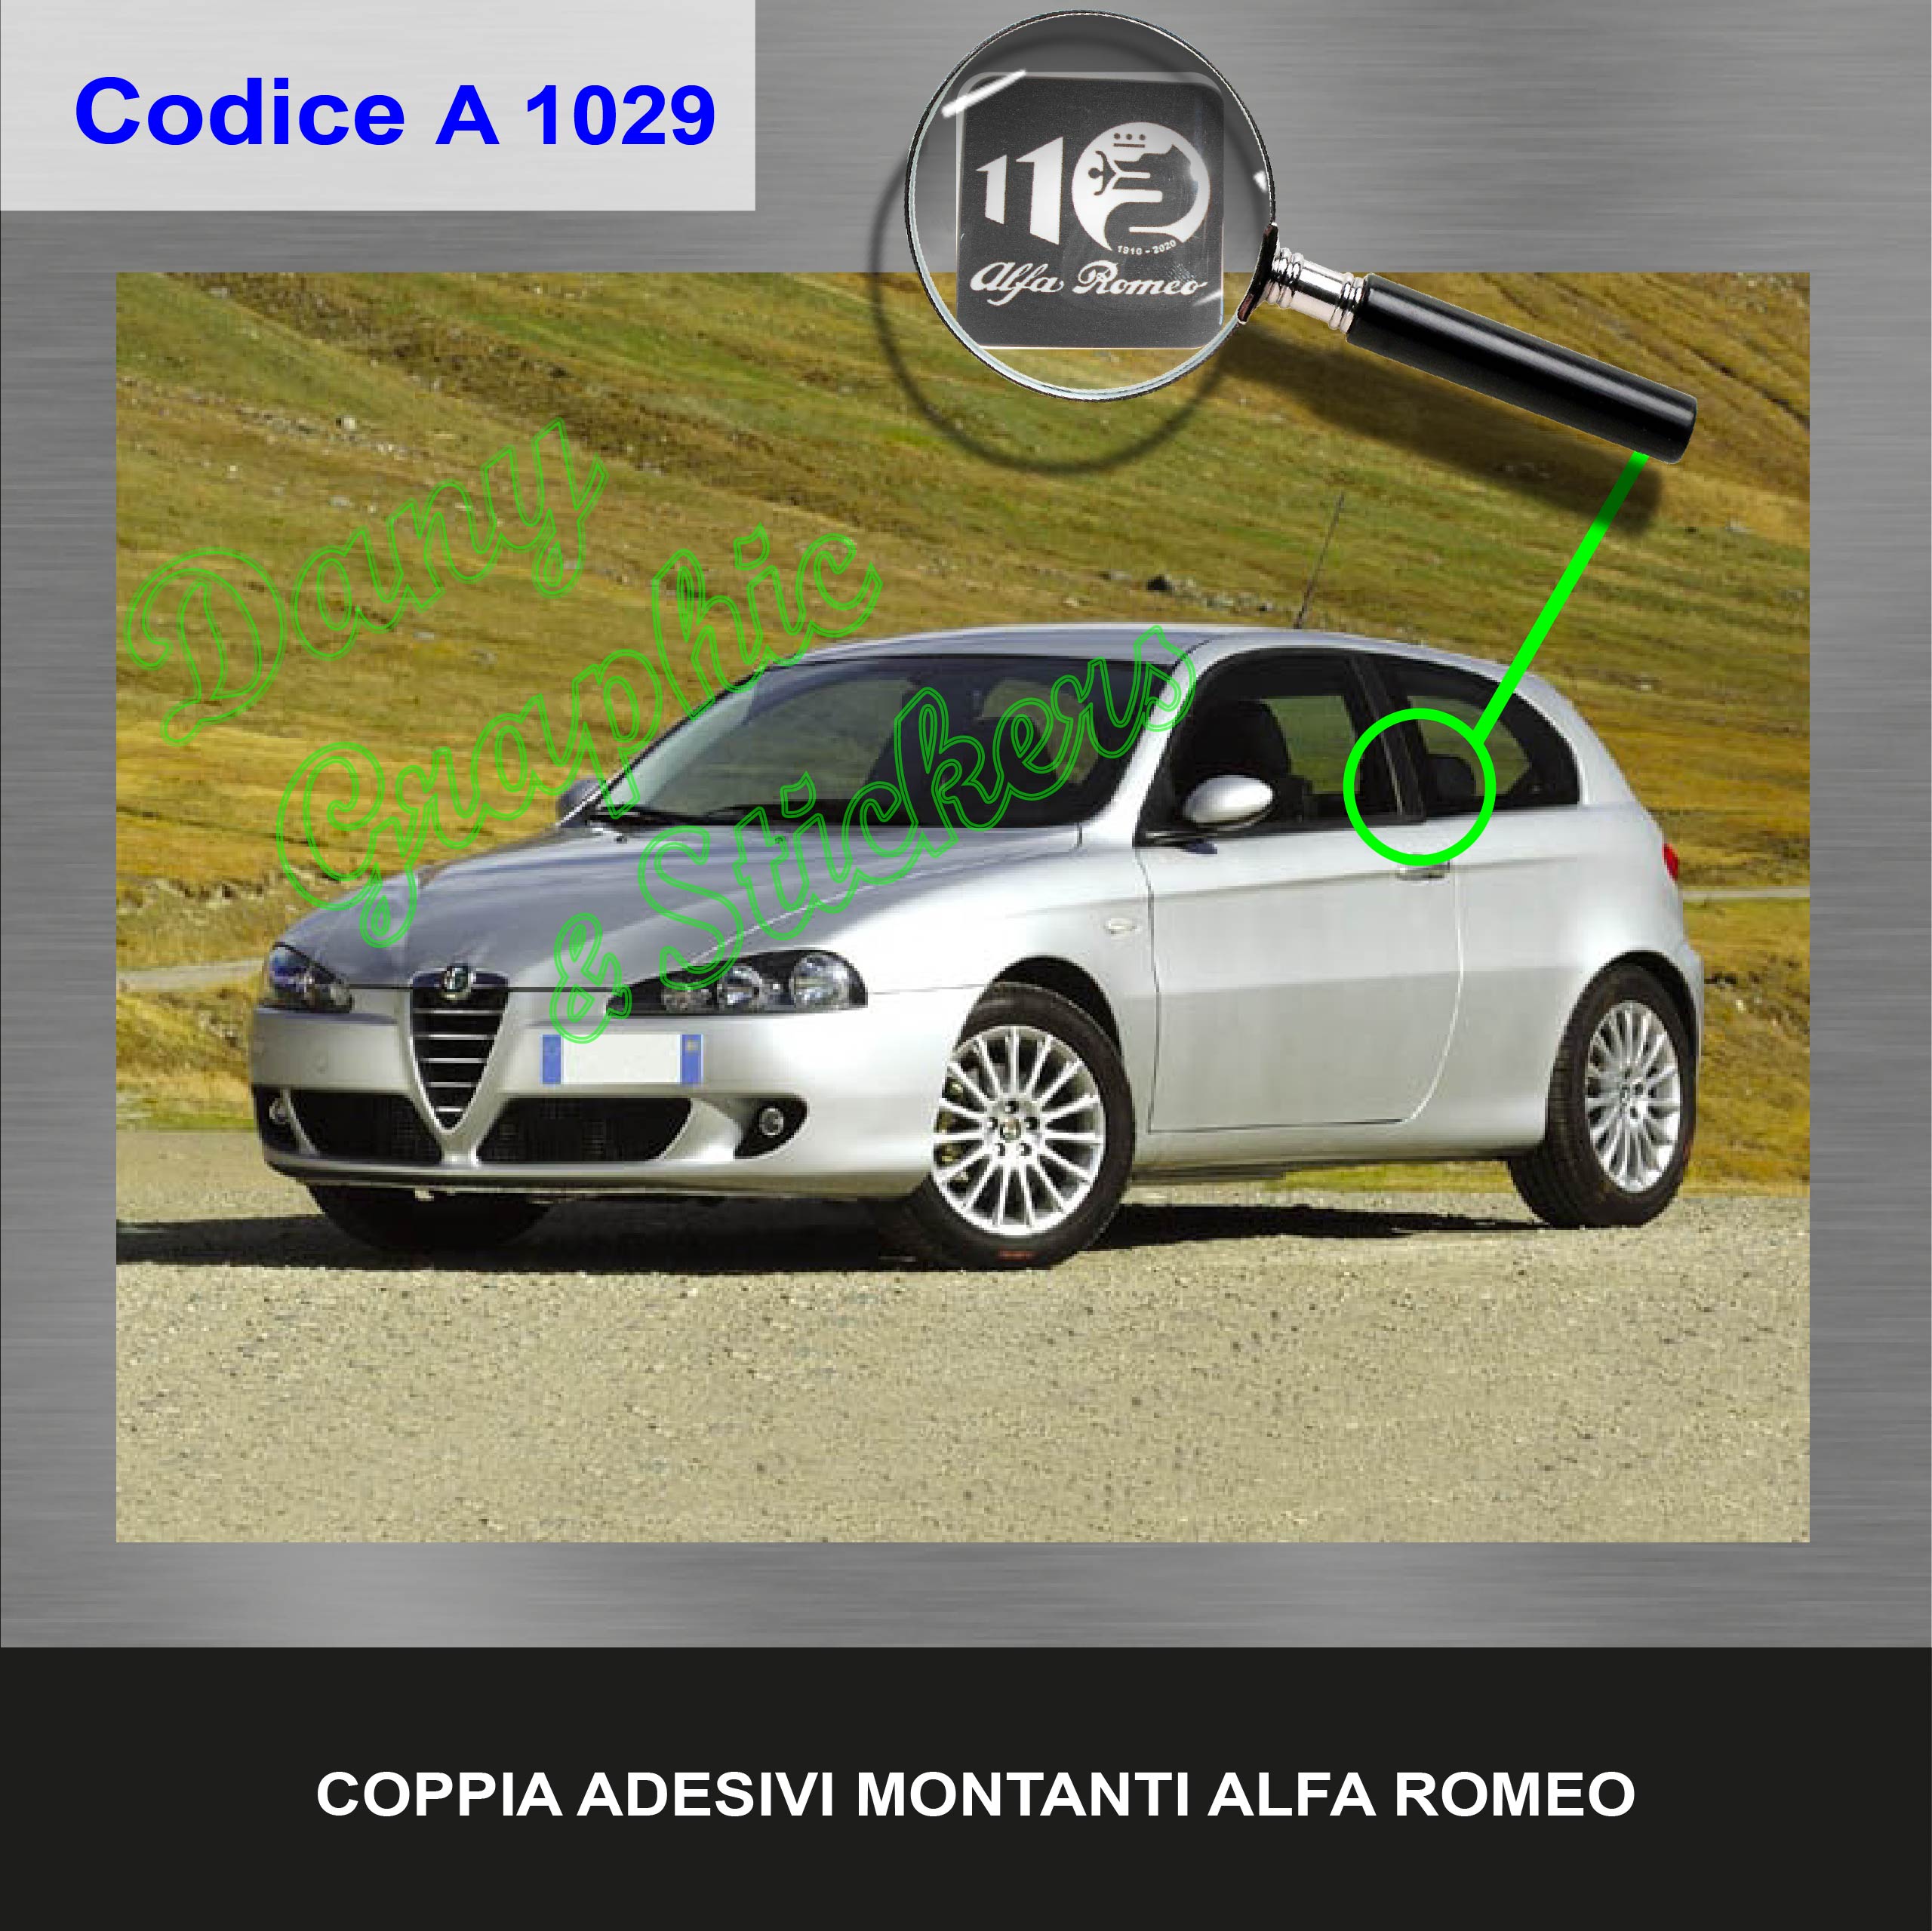 Coppia Adesivi Copri Logo Alfa Romeo - RP Grafica